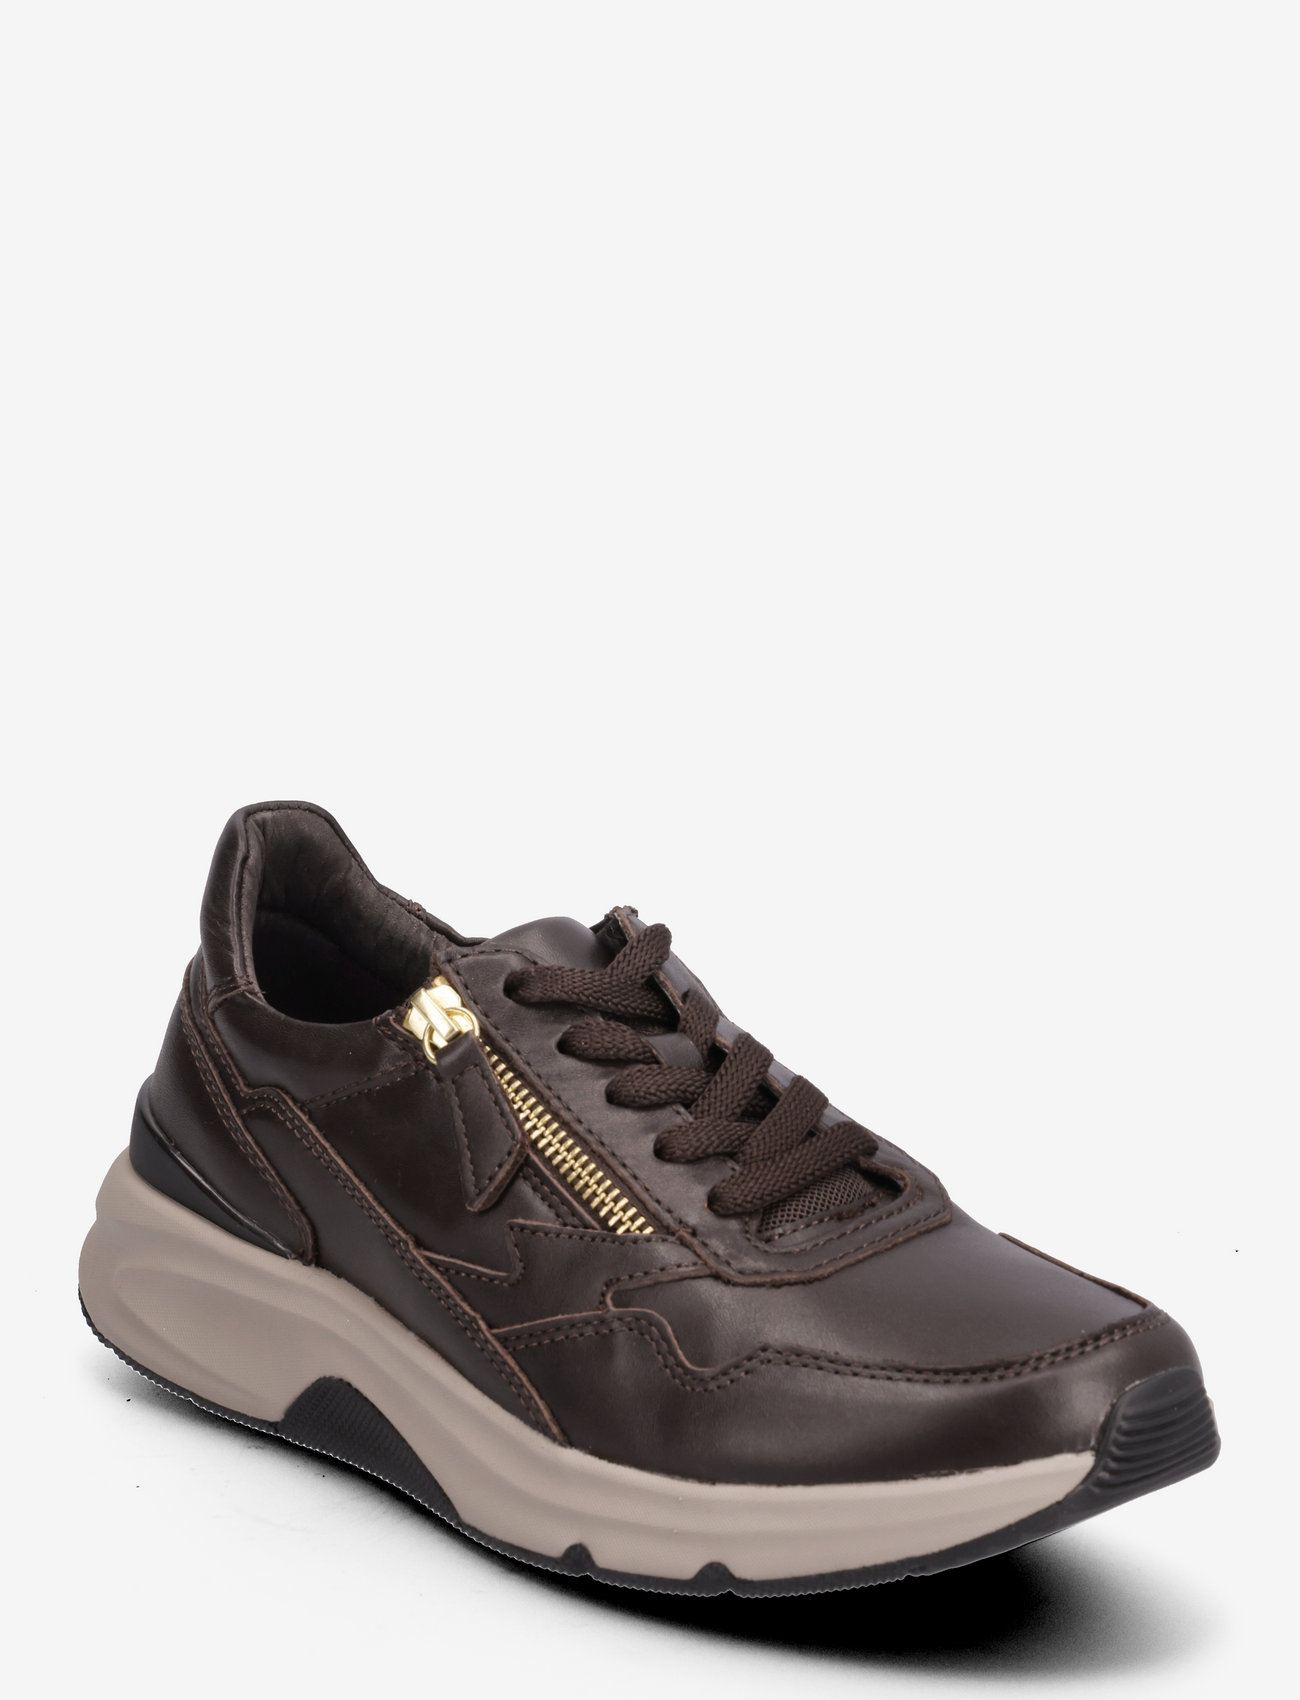 Gabor - rollingsoft sneaker - low top sneakers - brown - 0